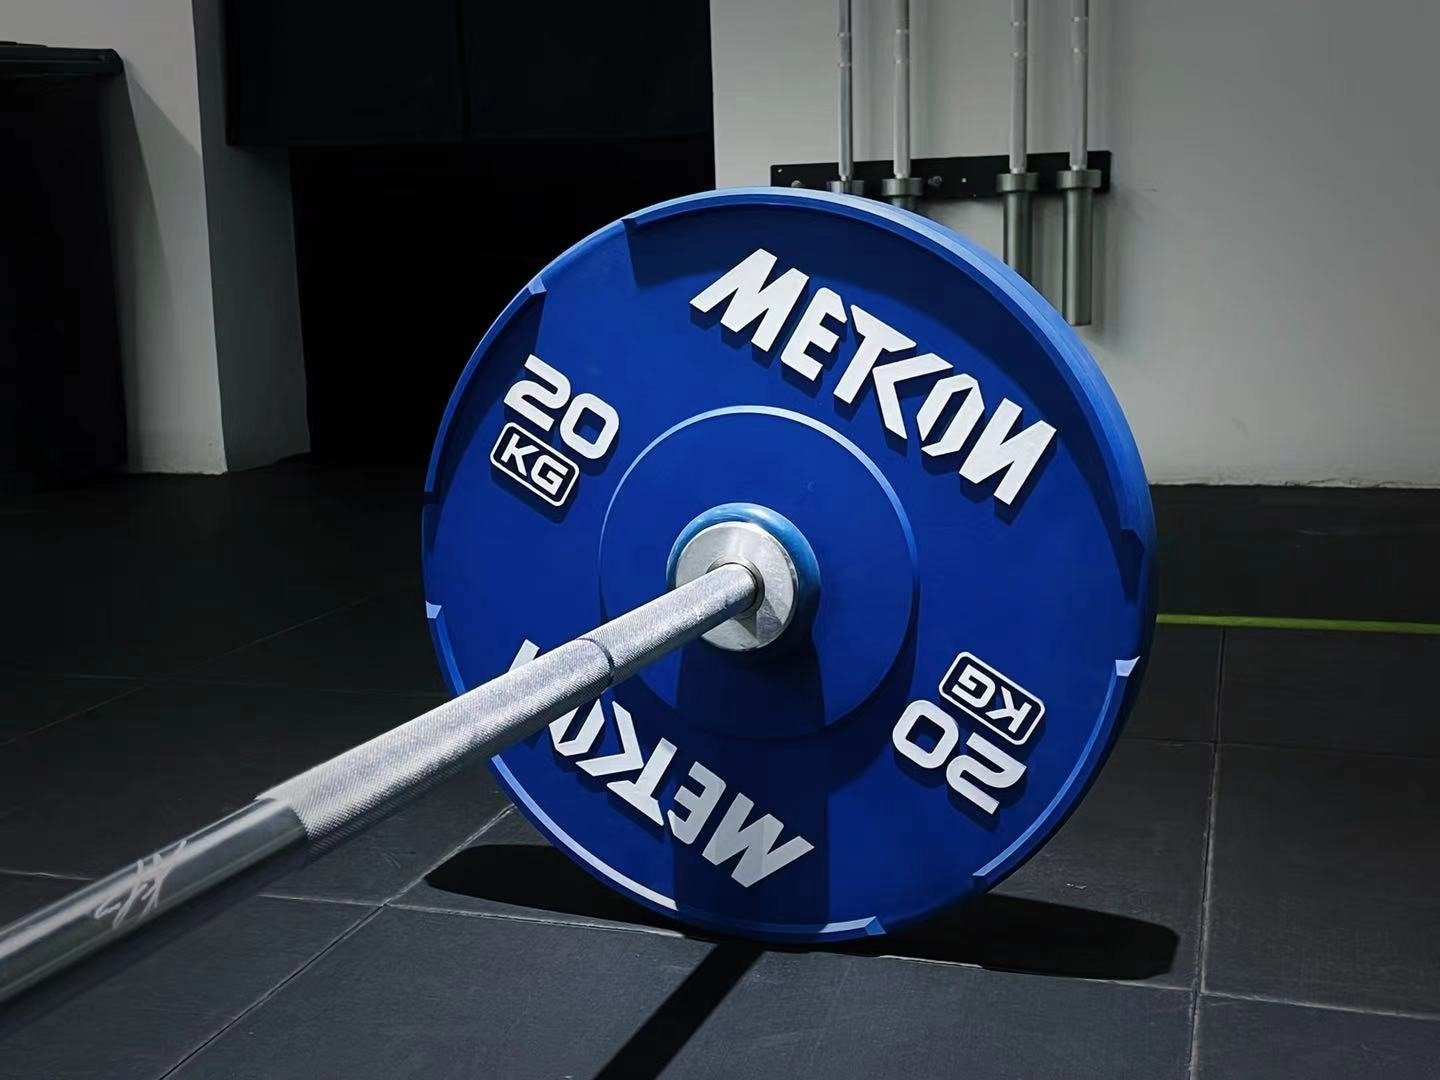 METCON Hantelscheibe Olympische Gewischtscheibe 10 kg Training